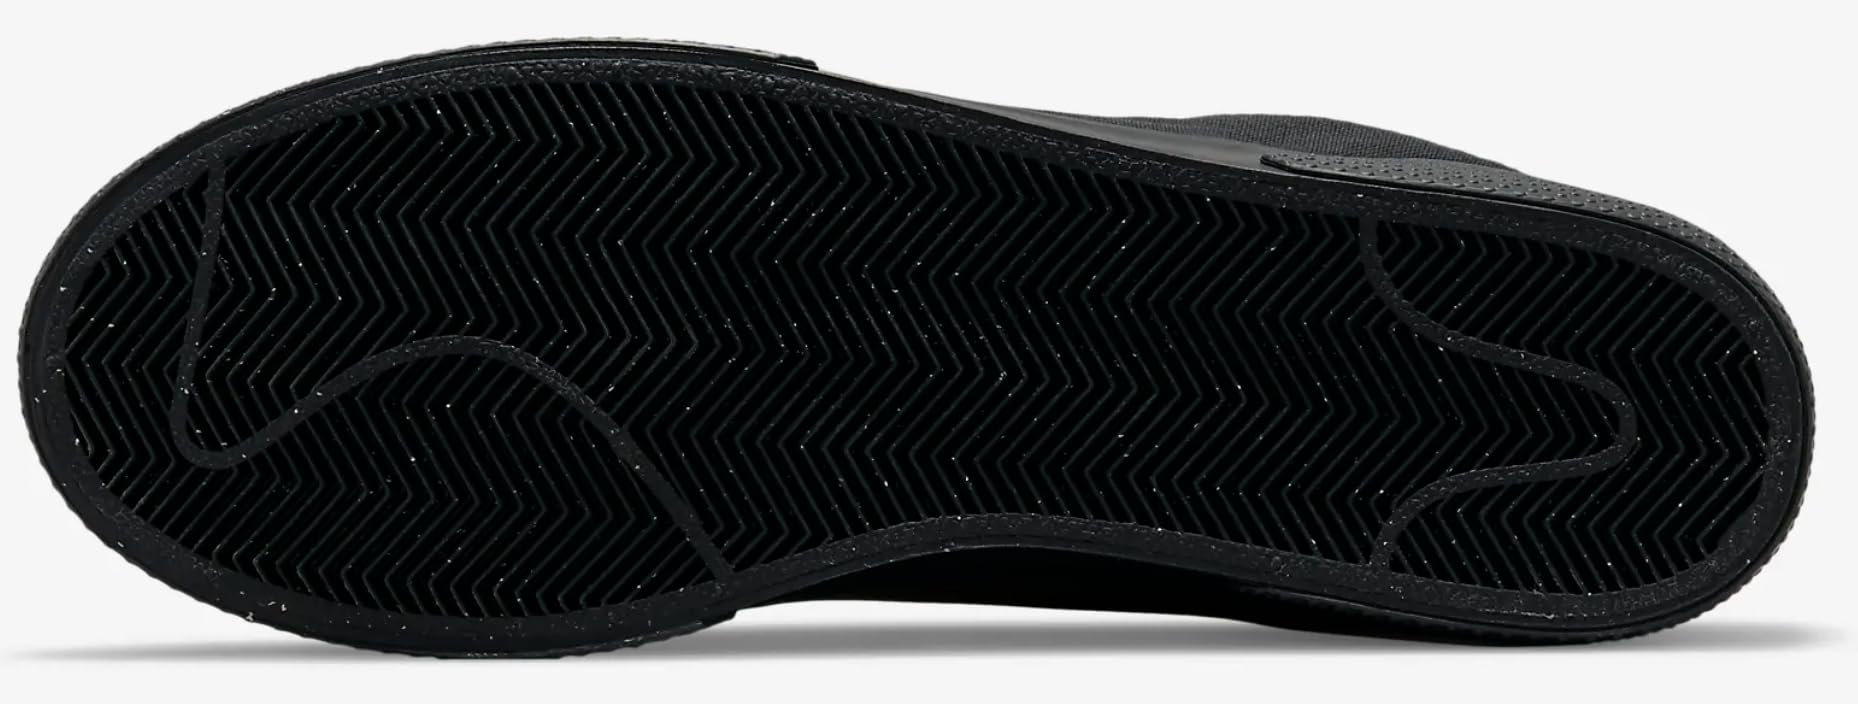 Nike GTS 97 Black/White Men's Retro Shoes